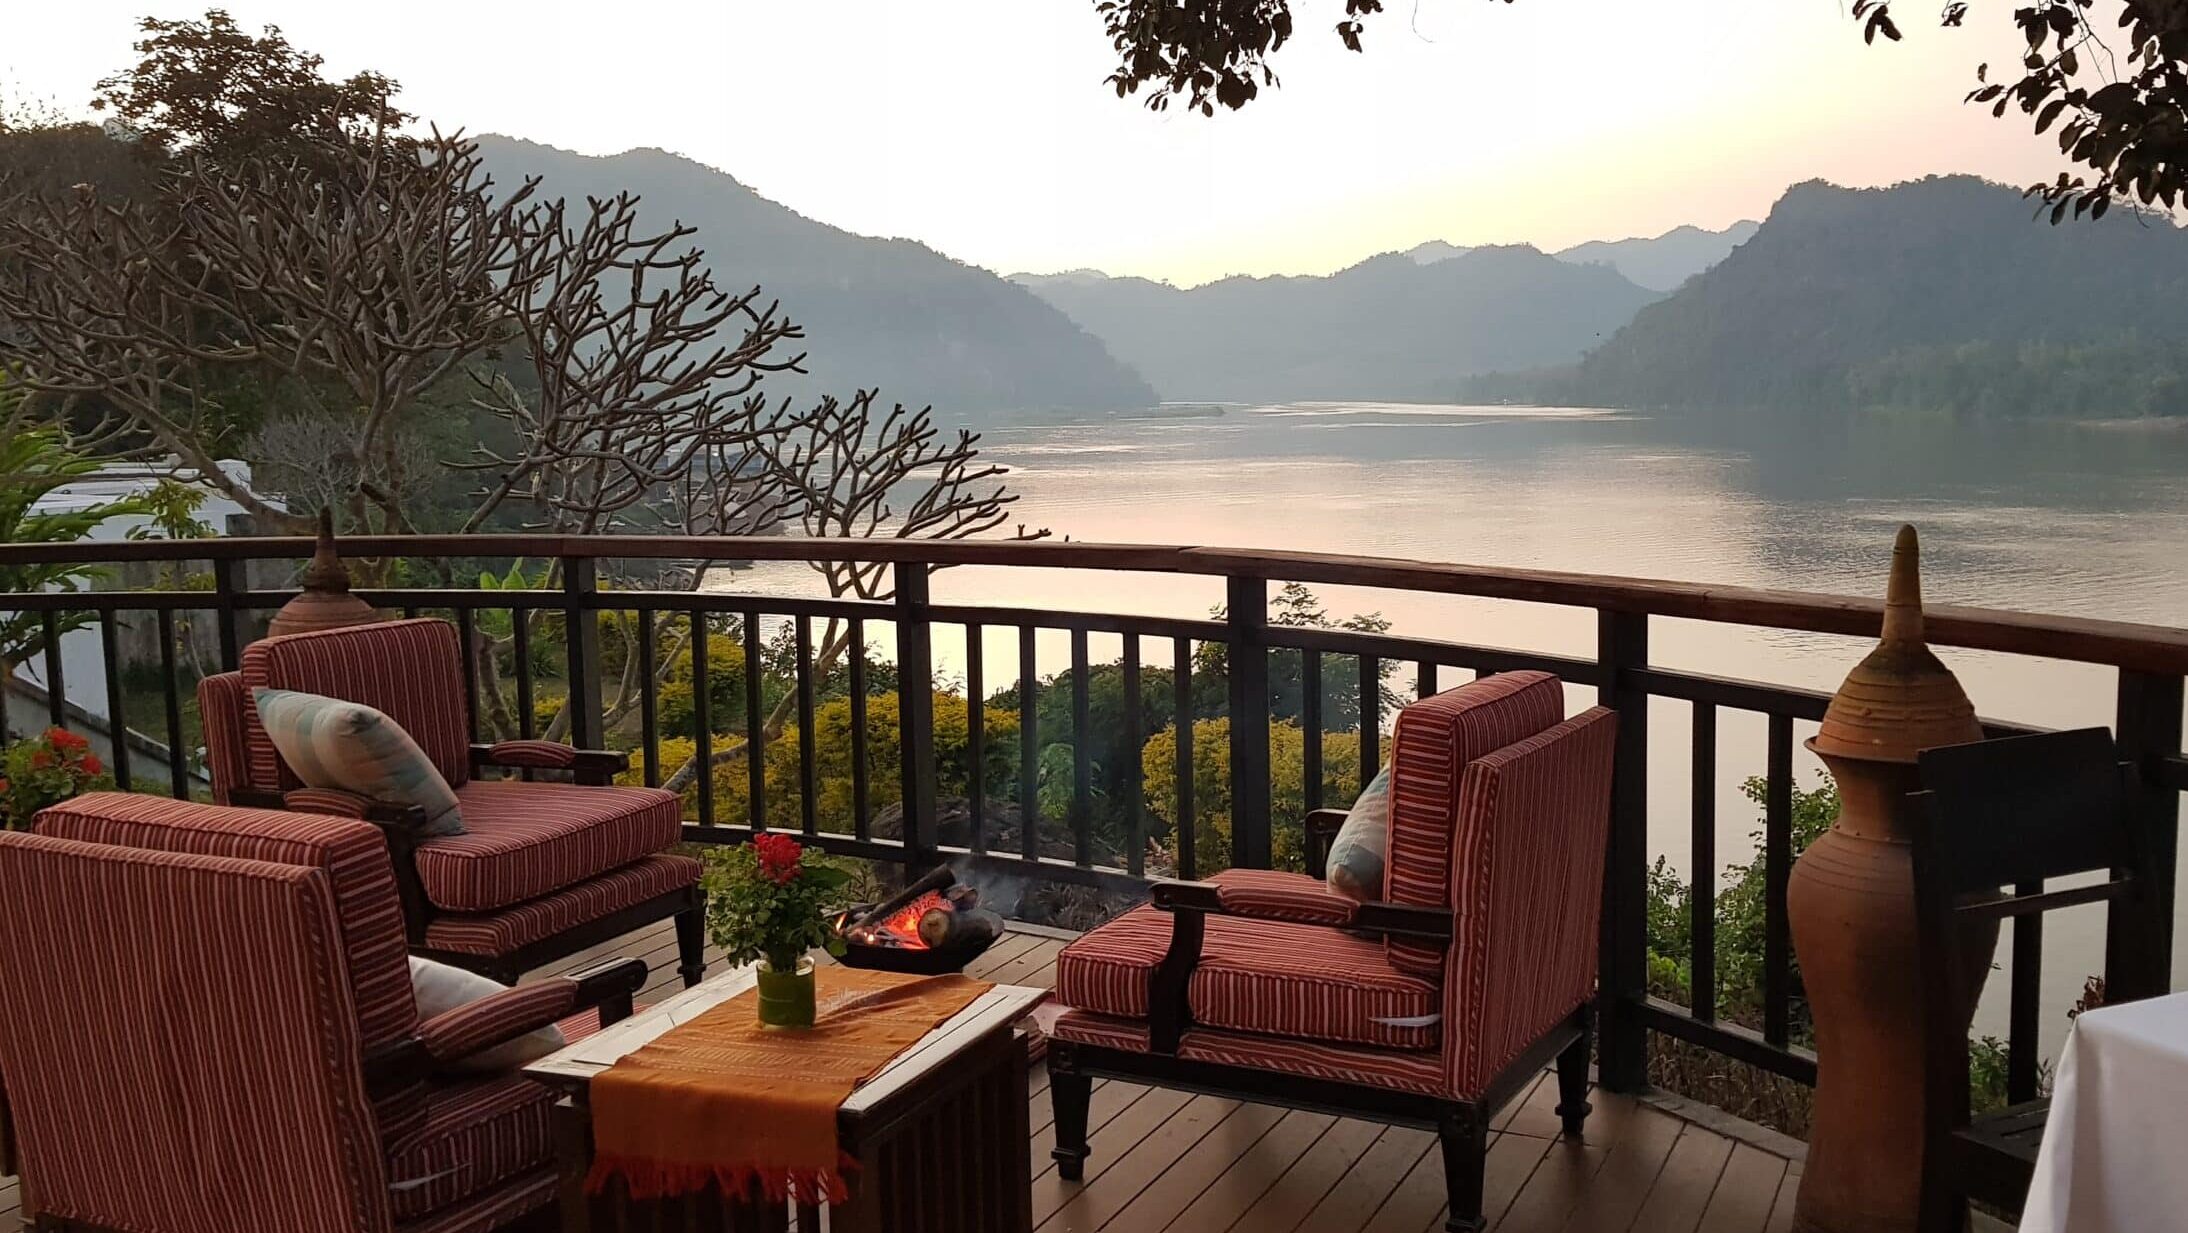 Meliá eleva su apuesta por el lujo en Asia con su primer hotel en Laos